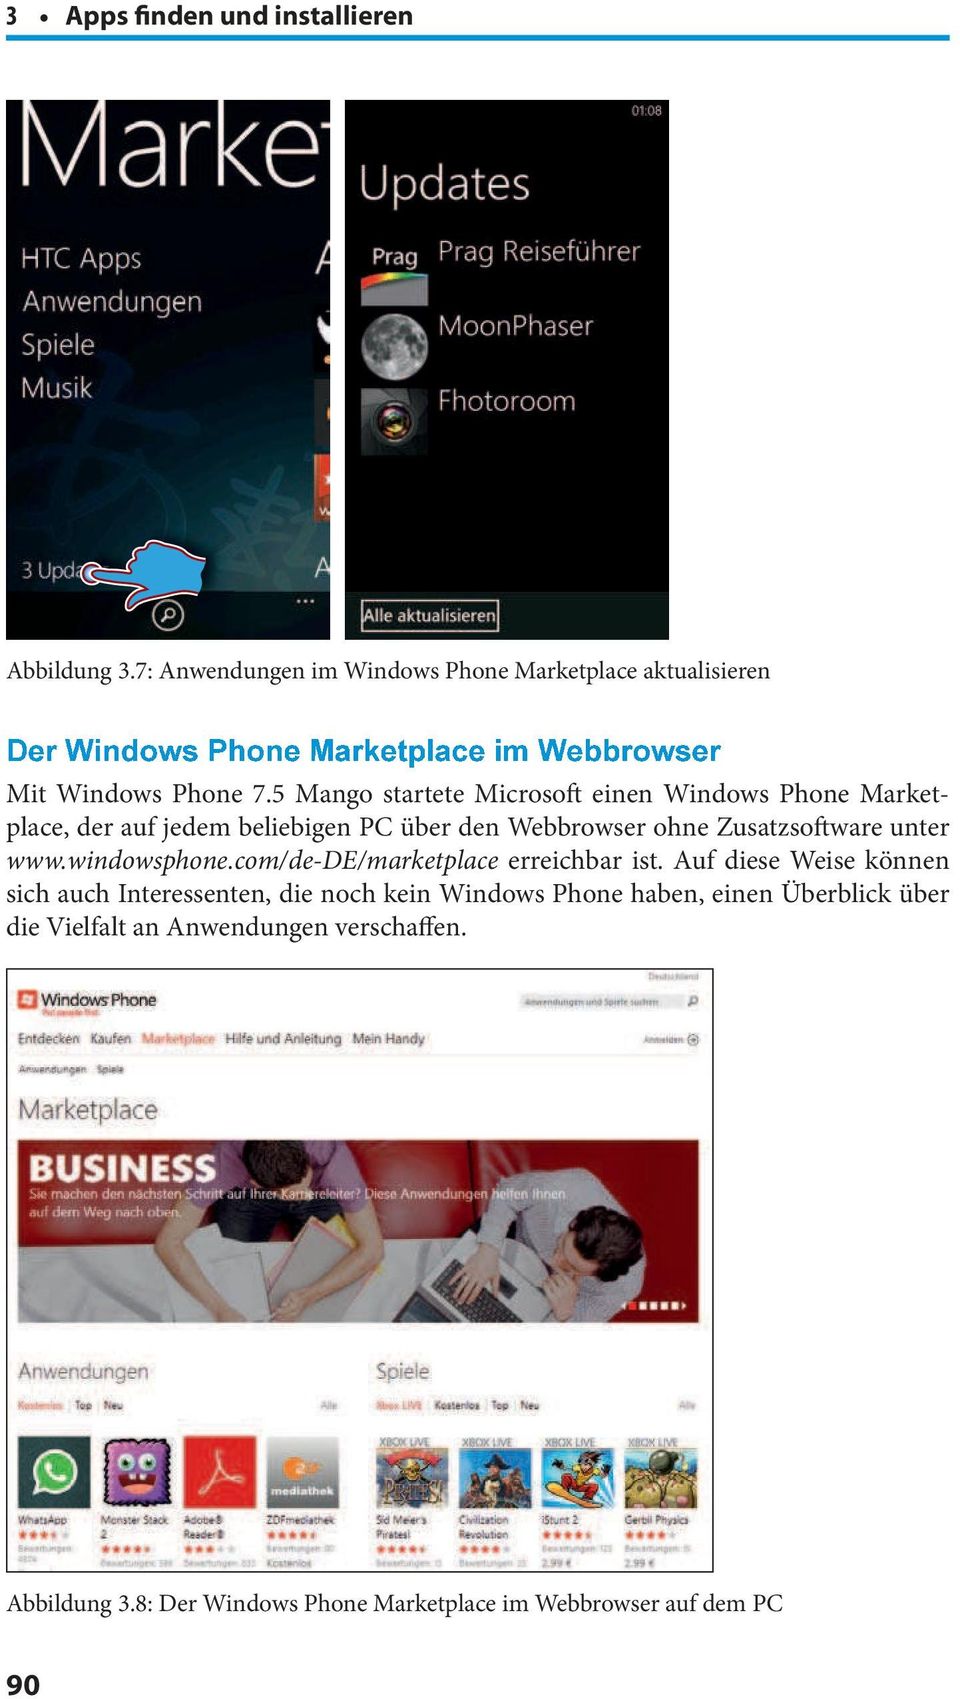 Zusatzsotware unter www.windowsphone.com/de-de/marketplace erreichbar ist.